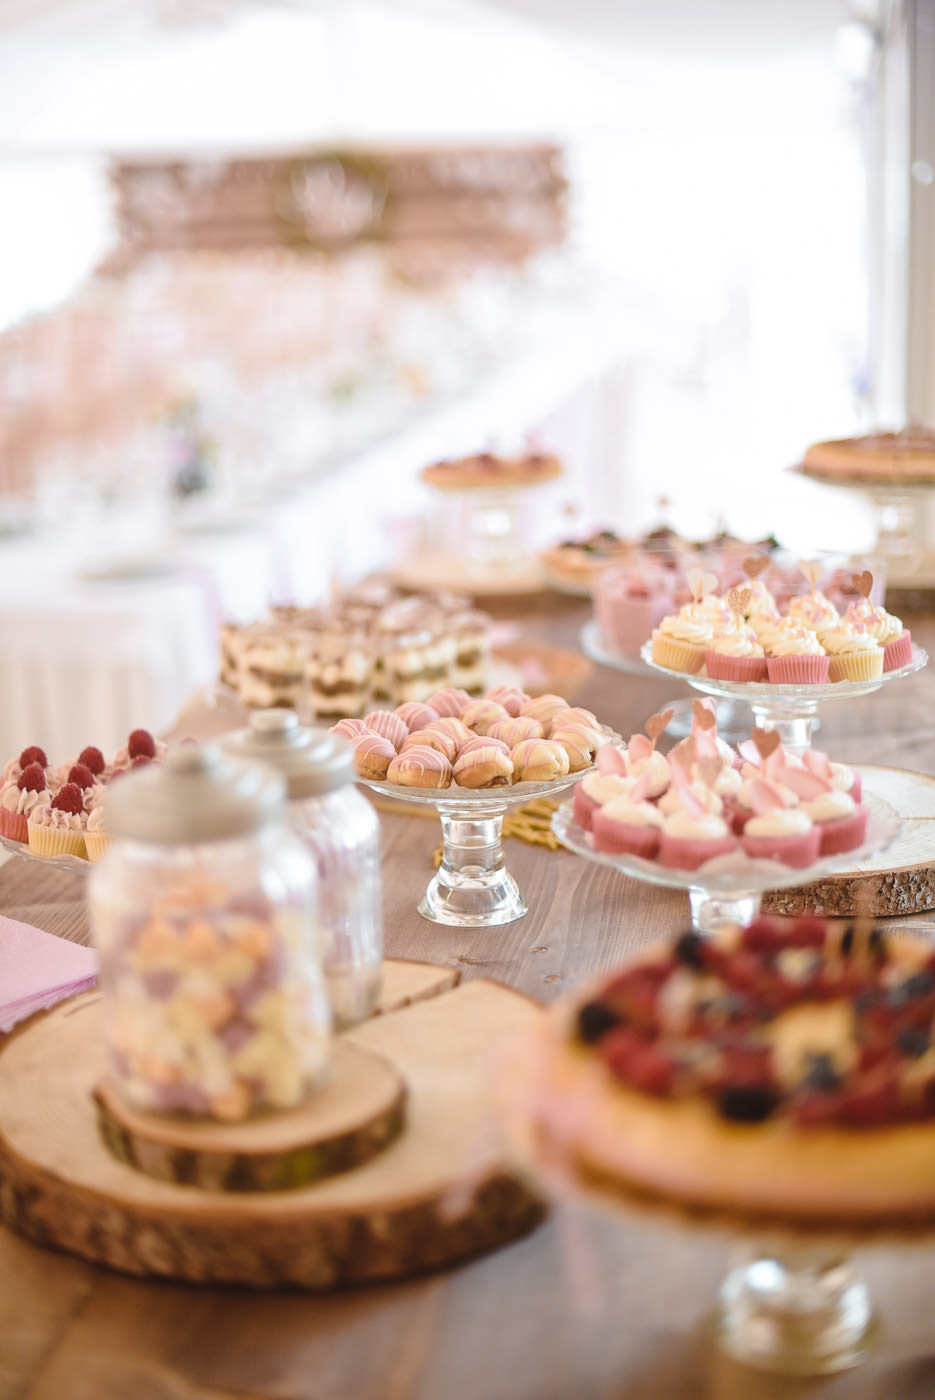 Susan&Sis decor – svadobna vyzdoba, dekorovanie- svadba v bielom stane- ruzova jemna vyzdoba, ruze, vela kvetov, ruzove stuhy, ruzovy svadobny candy bar, cukriky, lizatka, cup cakes